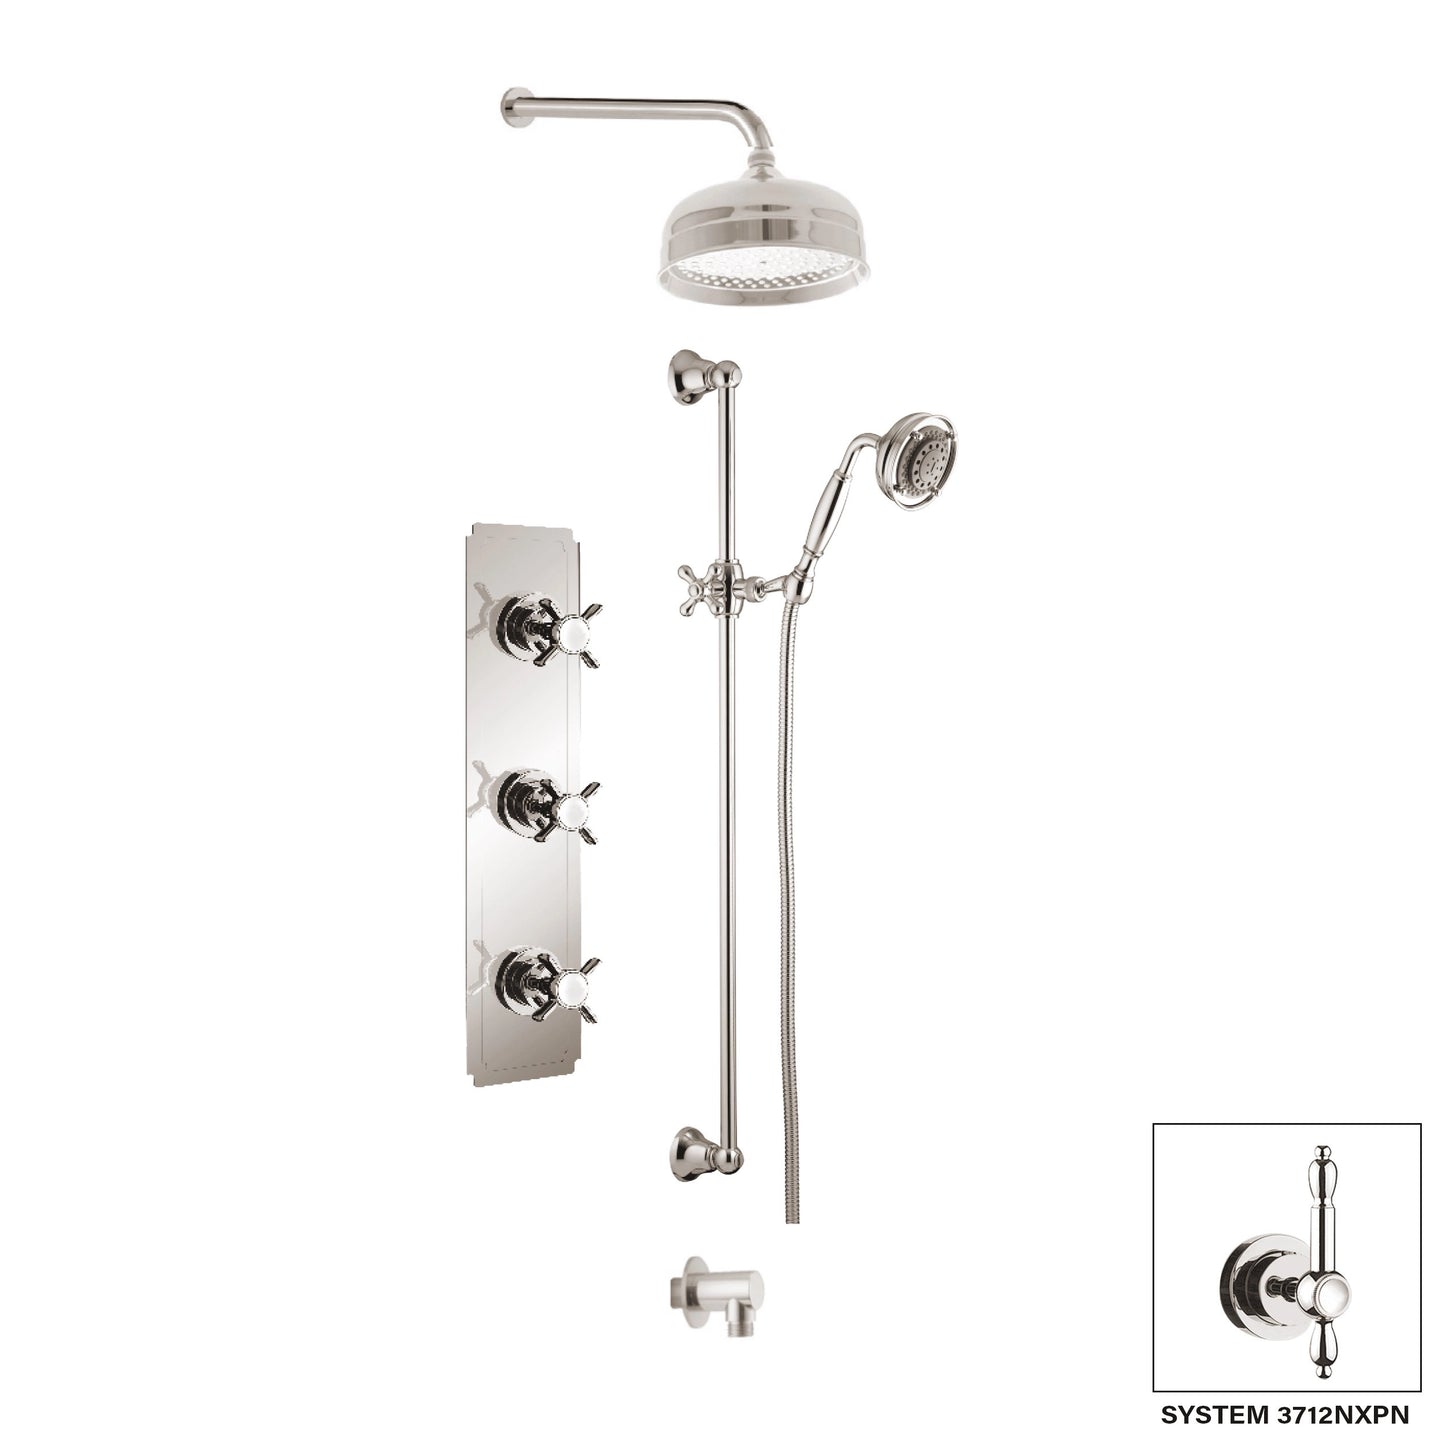 Aquadesign Products Shower Kits (Nostalgia 3712NX) - Brushed Nickel